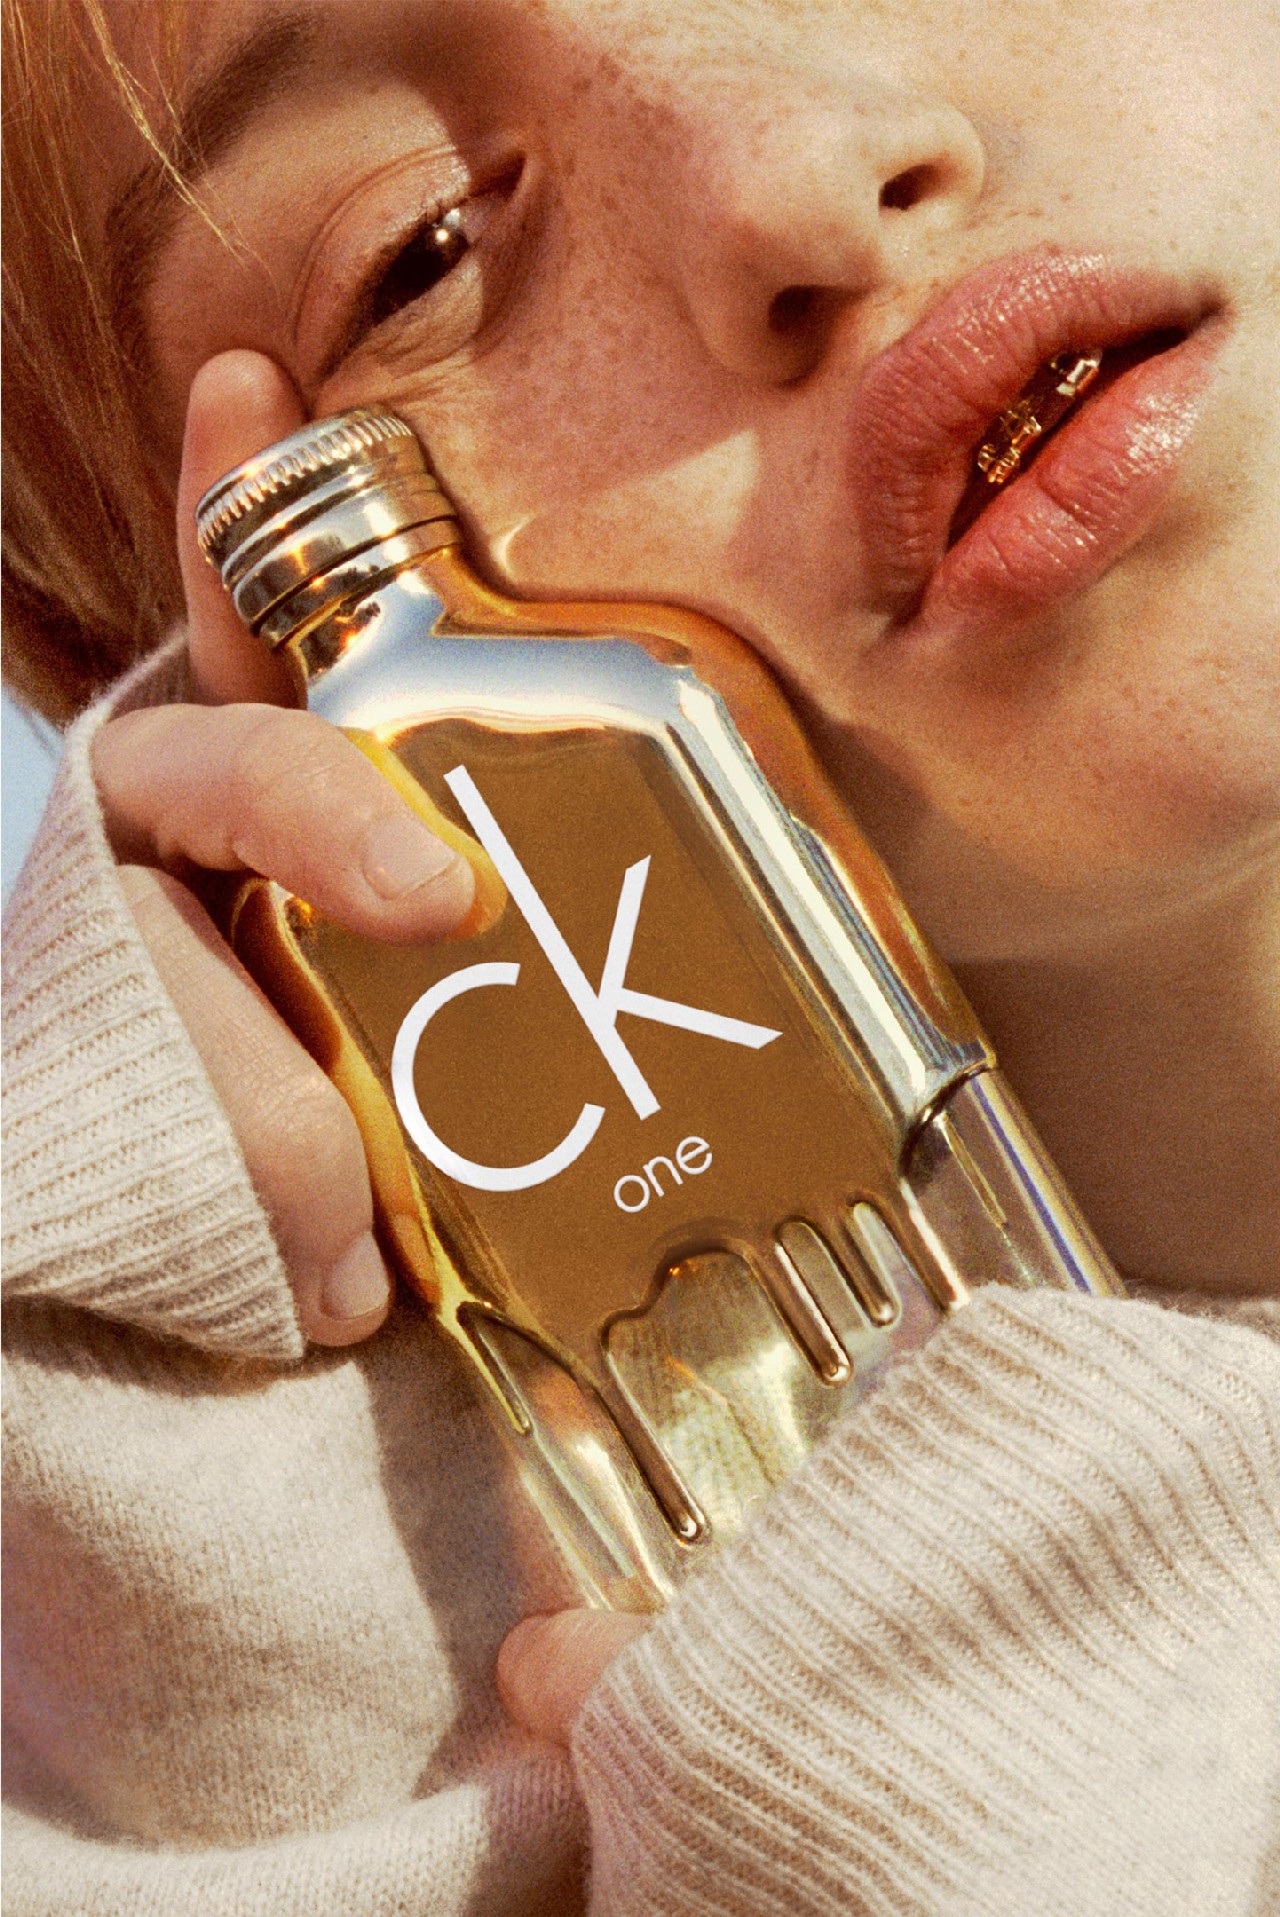 CK One Gold profumo: la nuova fragranza in limited edition